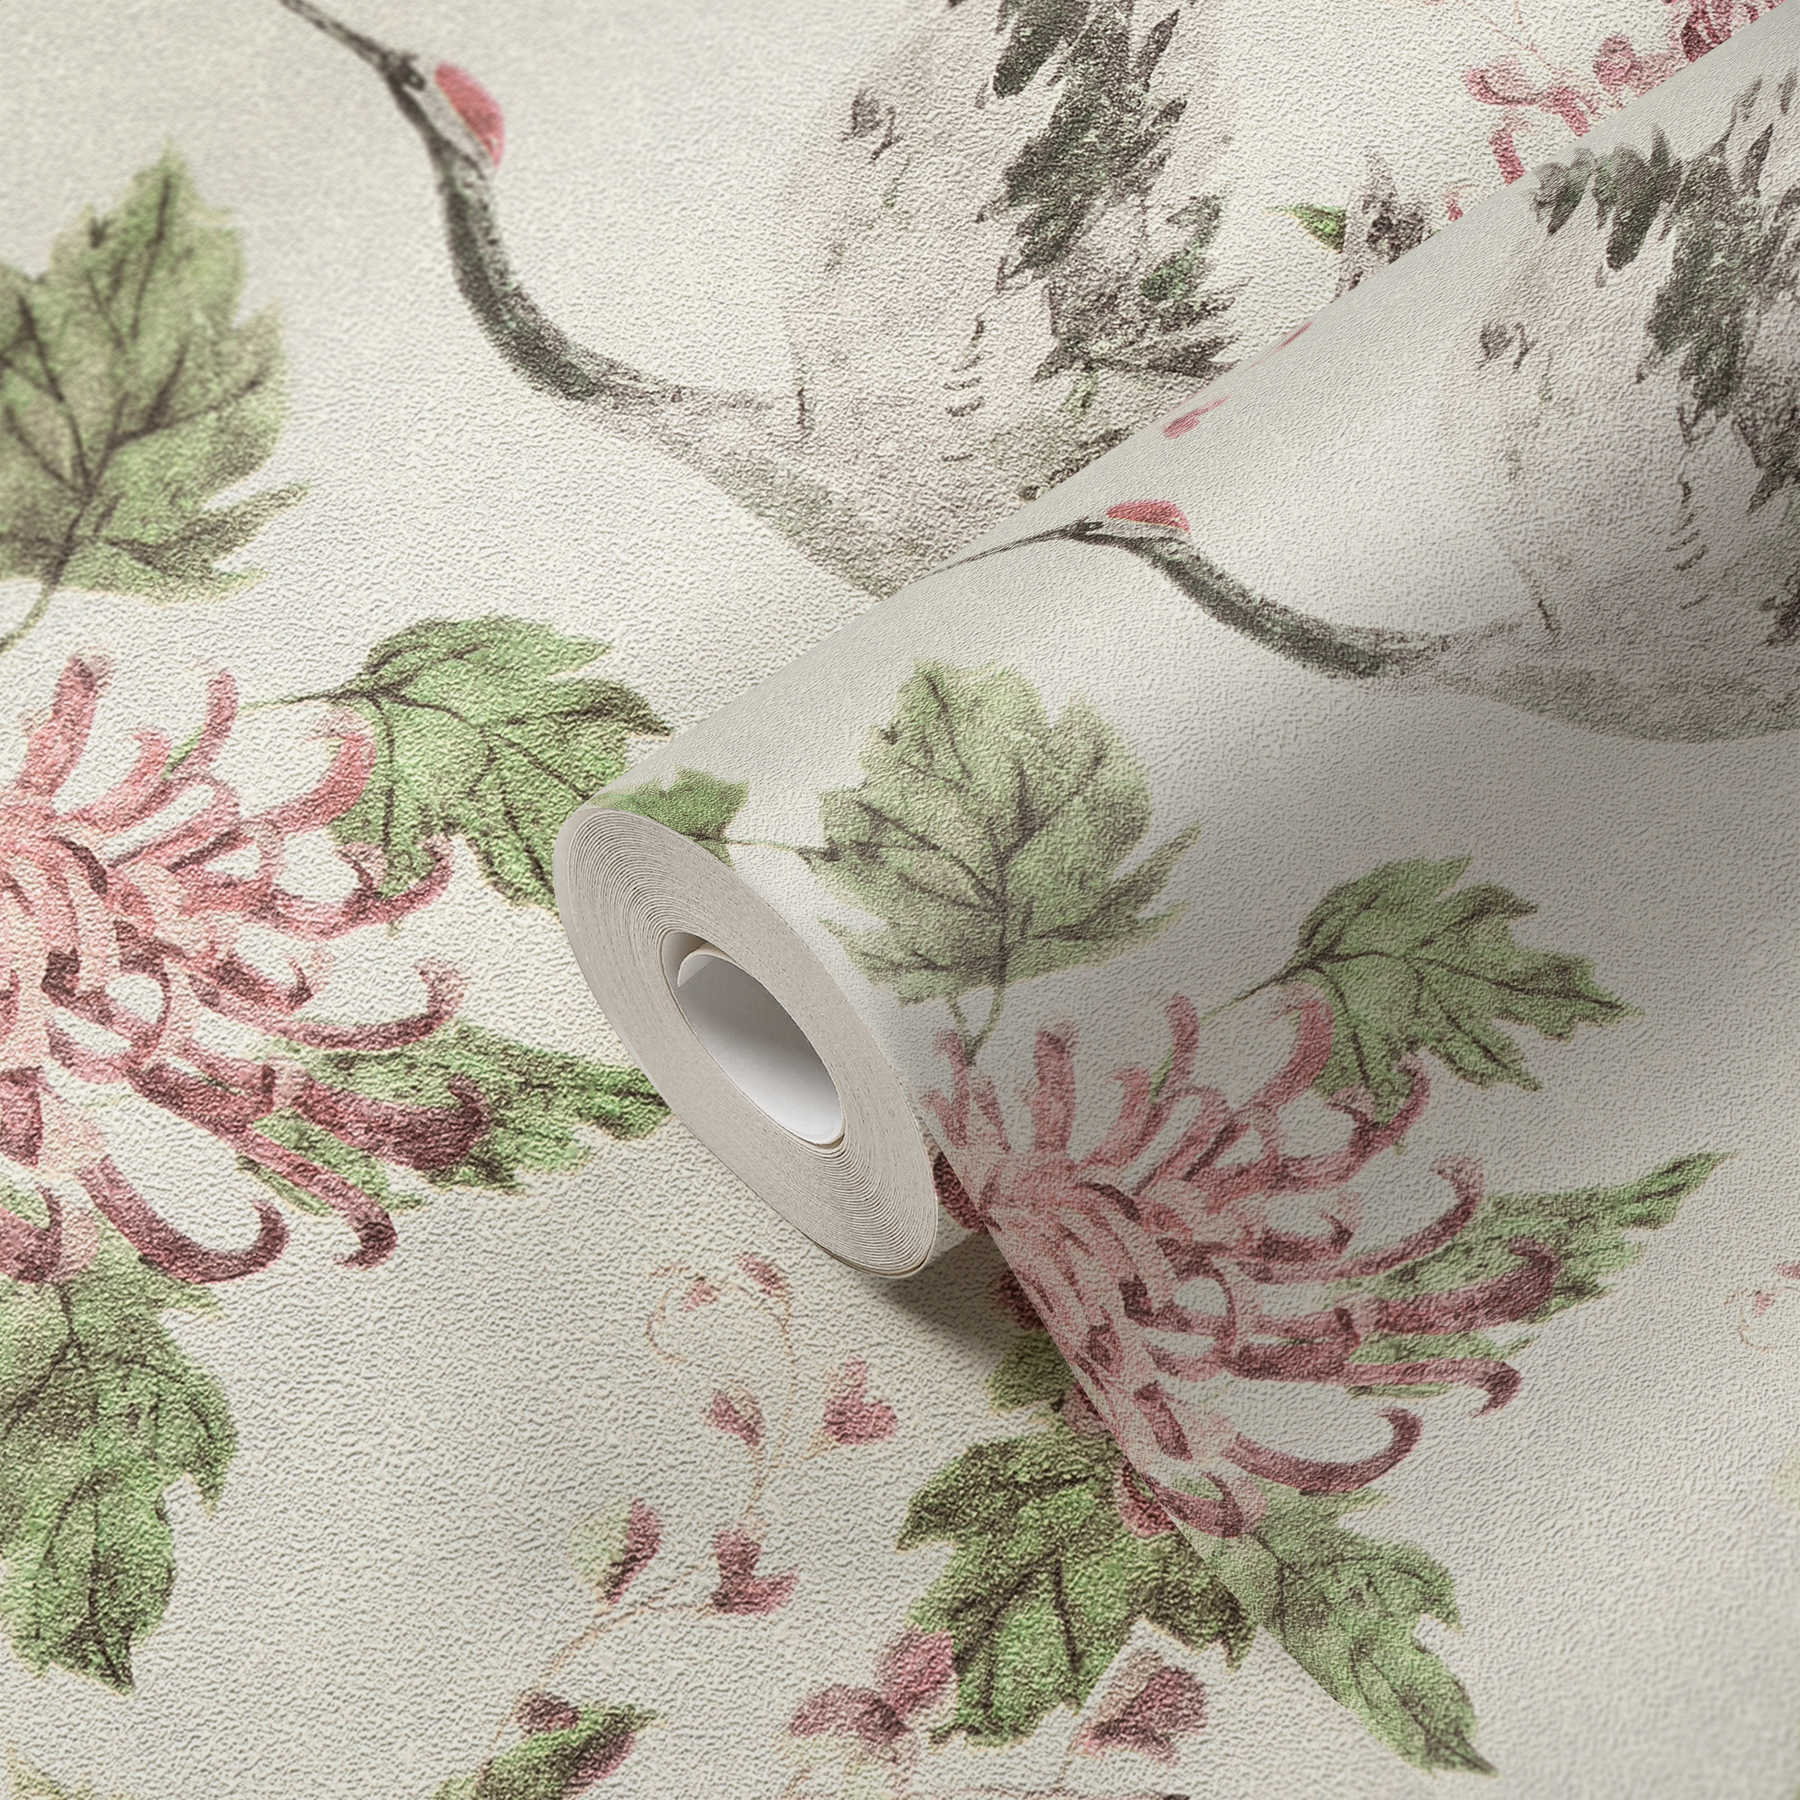             Papier peint à motifs avec grues et fleurs asiatiques - rose, vert, blanc
        